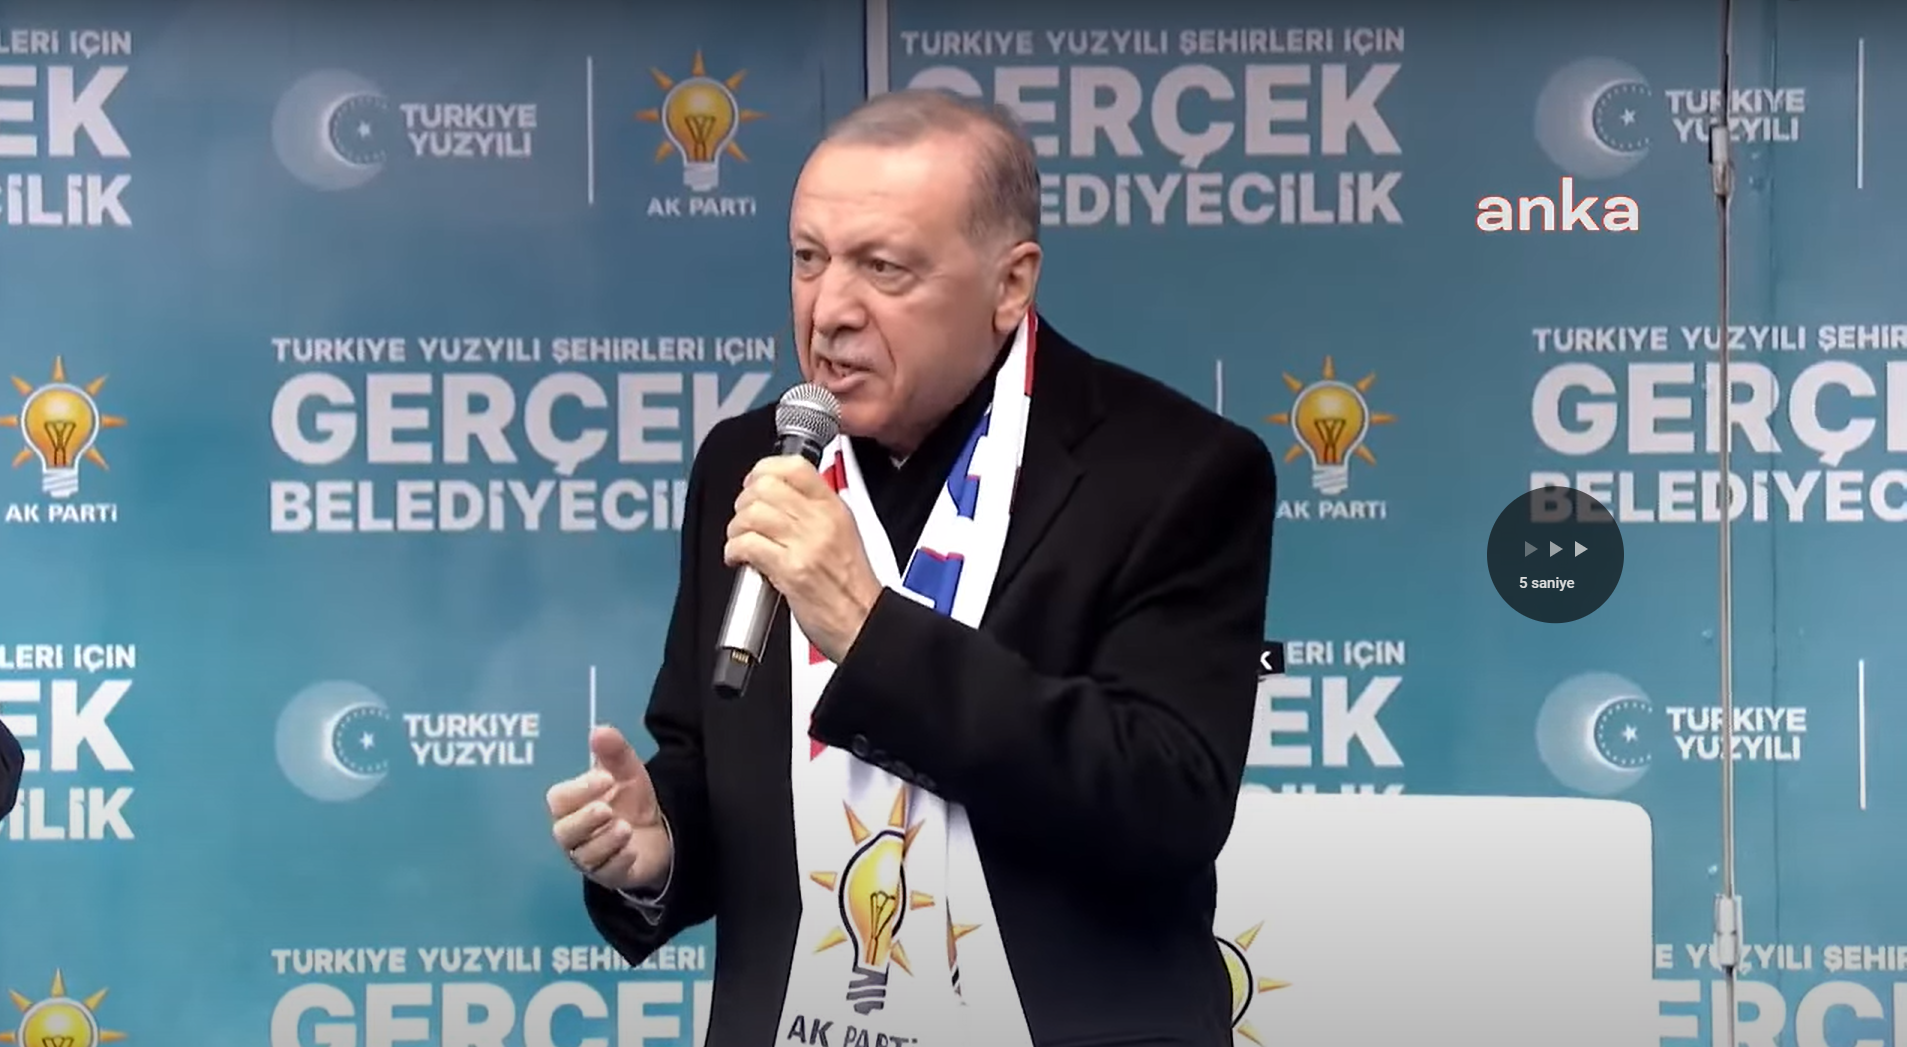 Cumhurbaşkanı Erdoğan, emekli aylıklarına zam talep eden muhalefeti eleştirdi: Sırtlarında yumurta küfesi olmayanlar diledikleri gibi atıp tutabilir